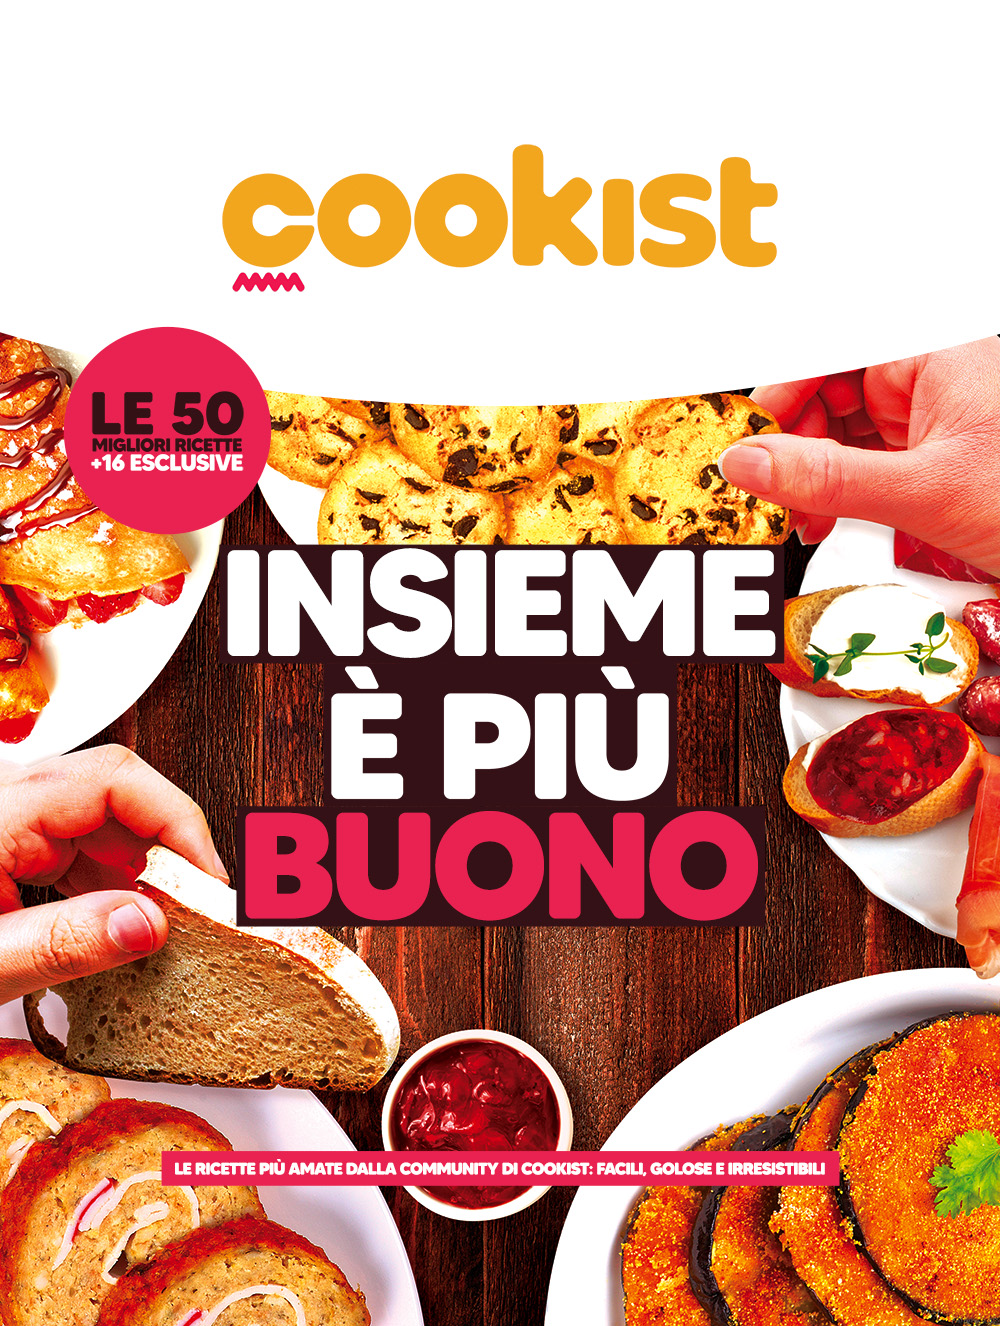 Una nuova edizione per il ricettario Cookist.  “Insieme è più buono”  L’ingrediente segreto? Le relazioni